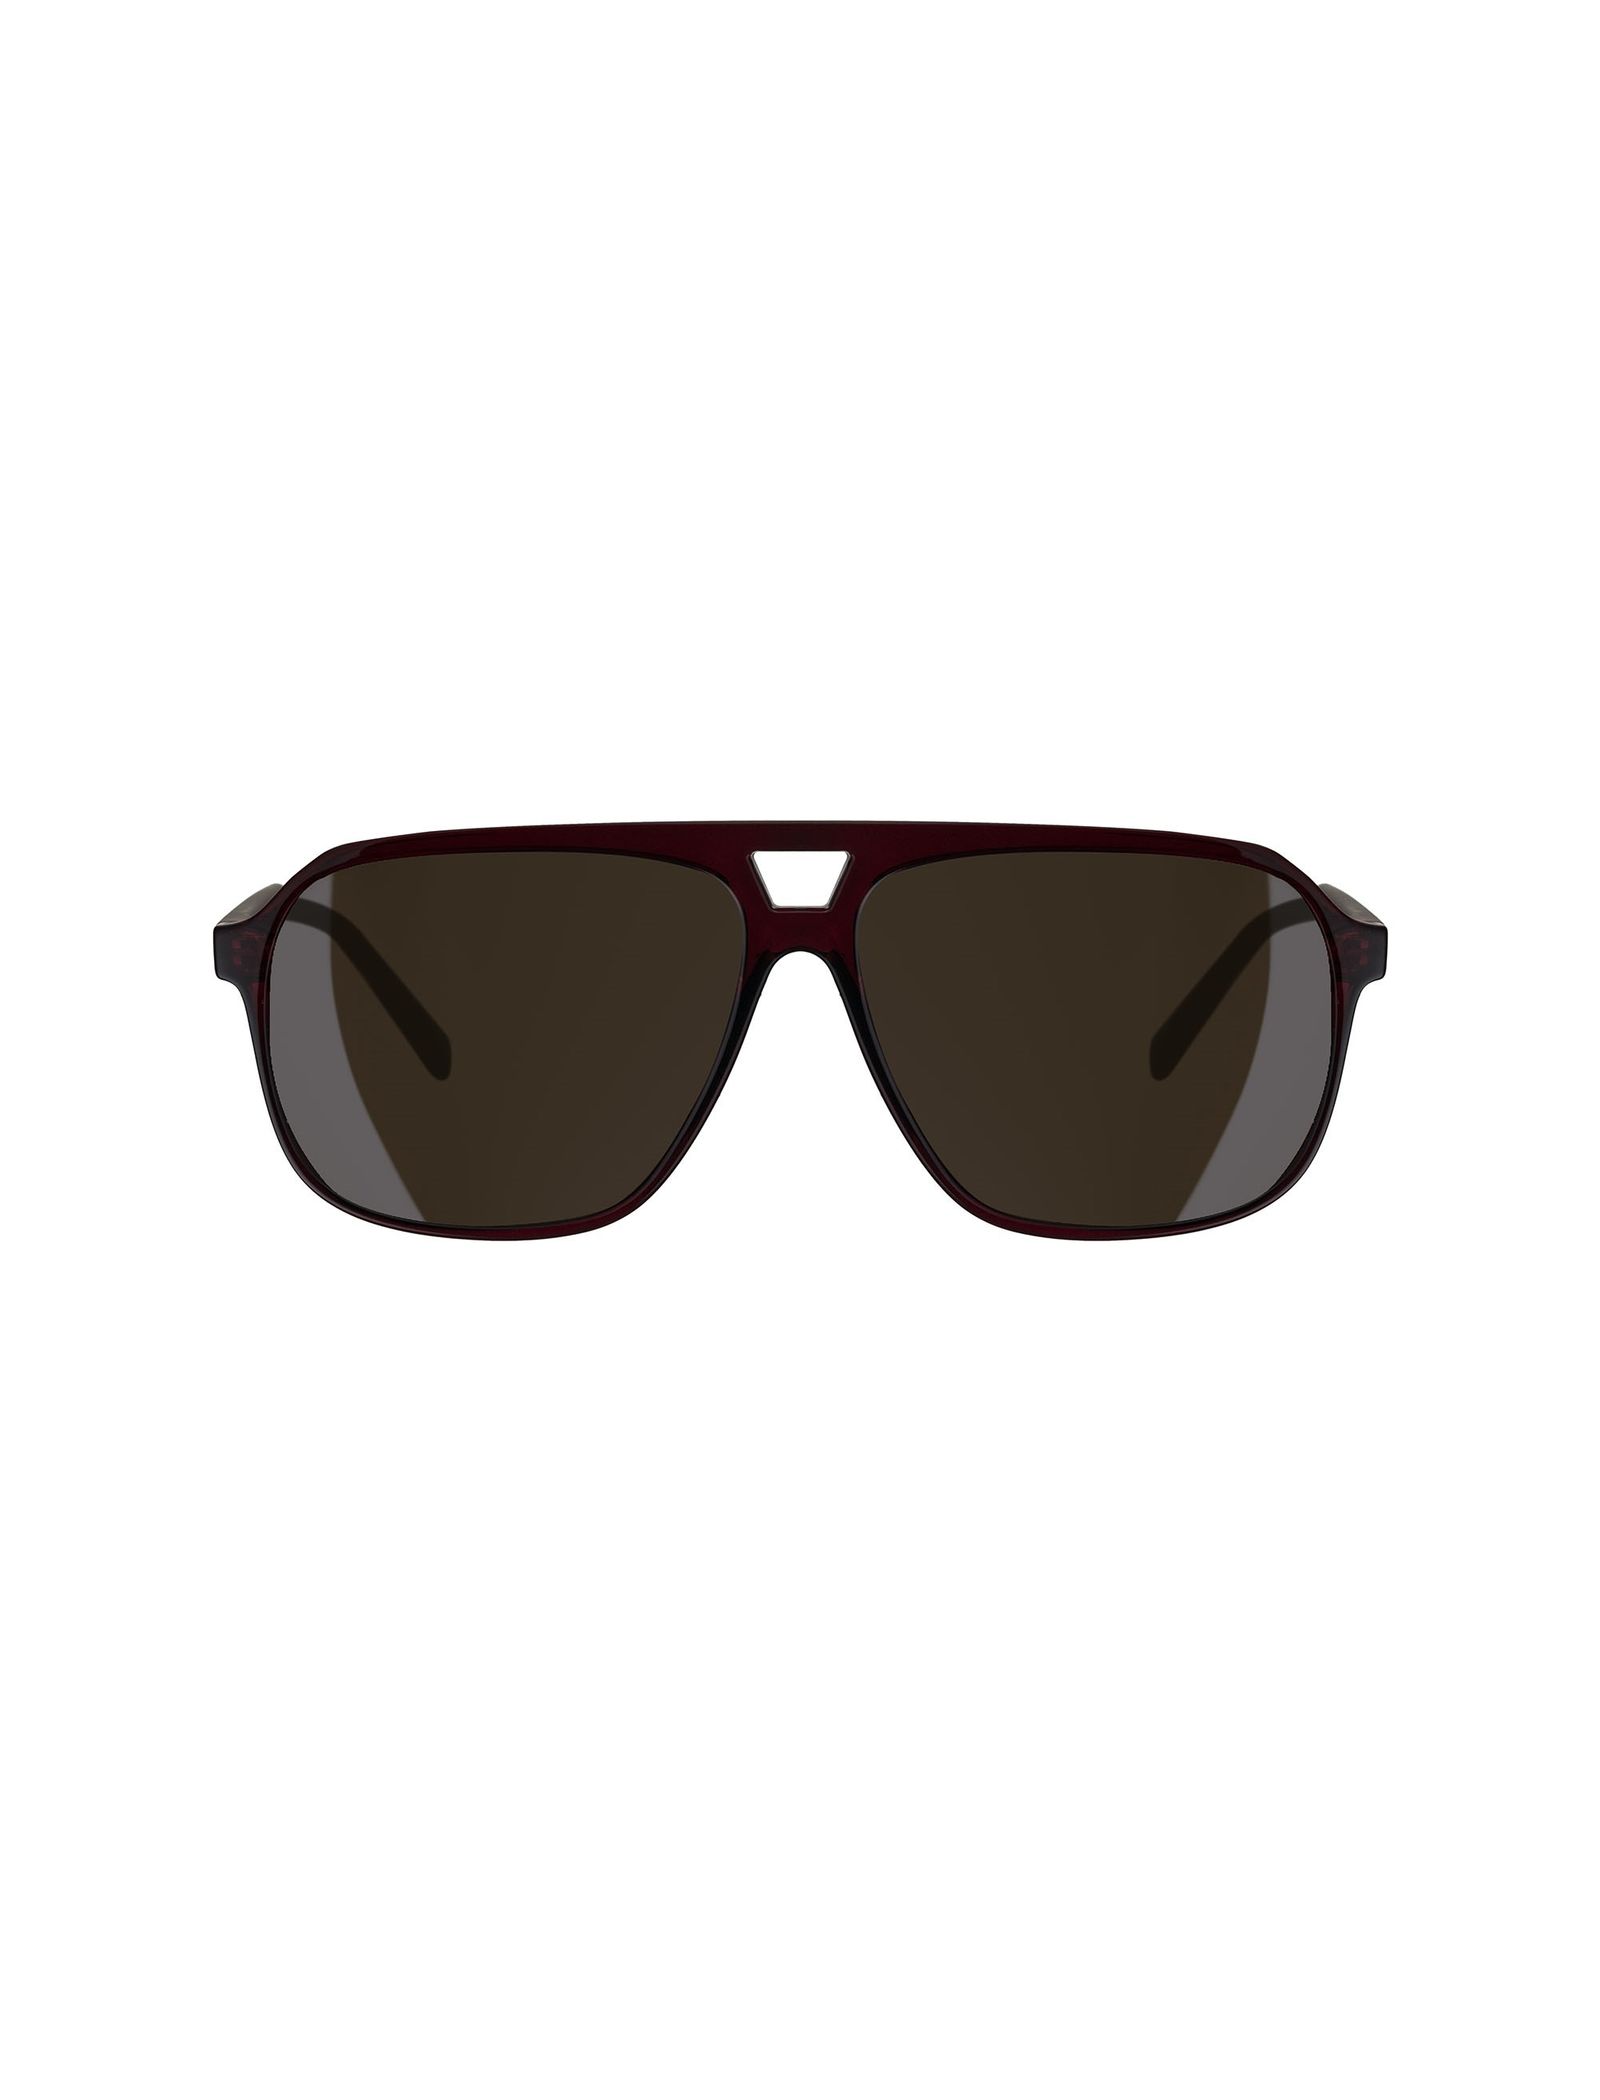 عینک آفتابی زنانه تد بیکر مدل TB150420058 - قهوه ای - 1